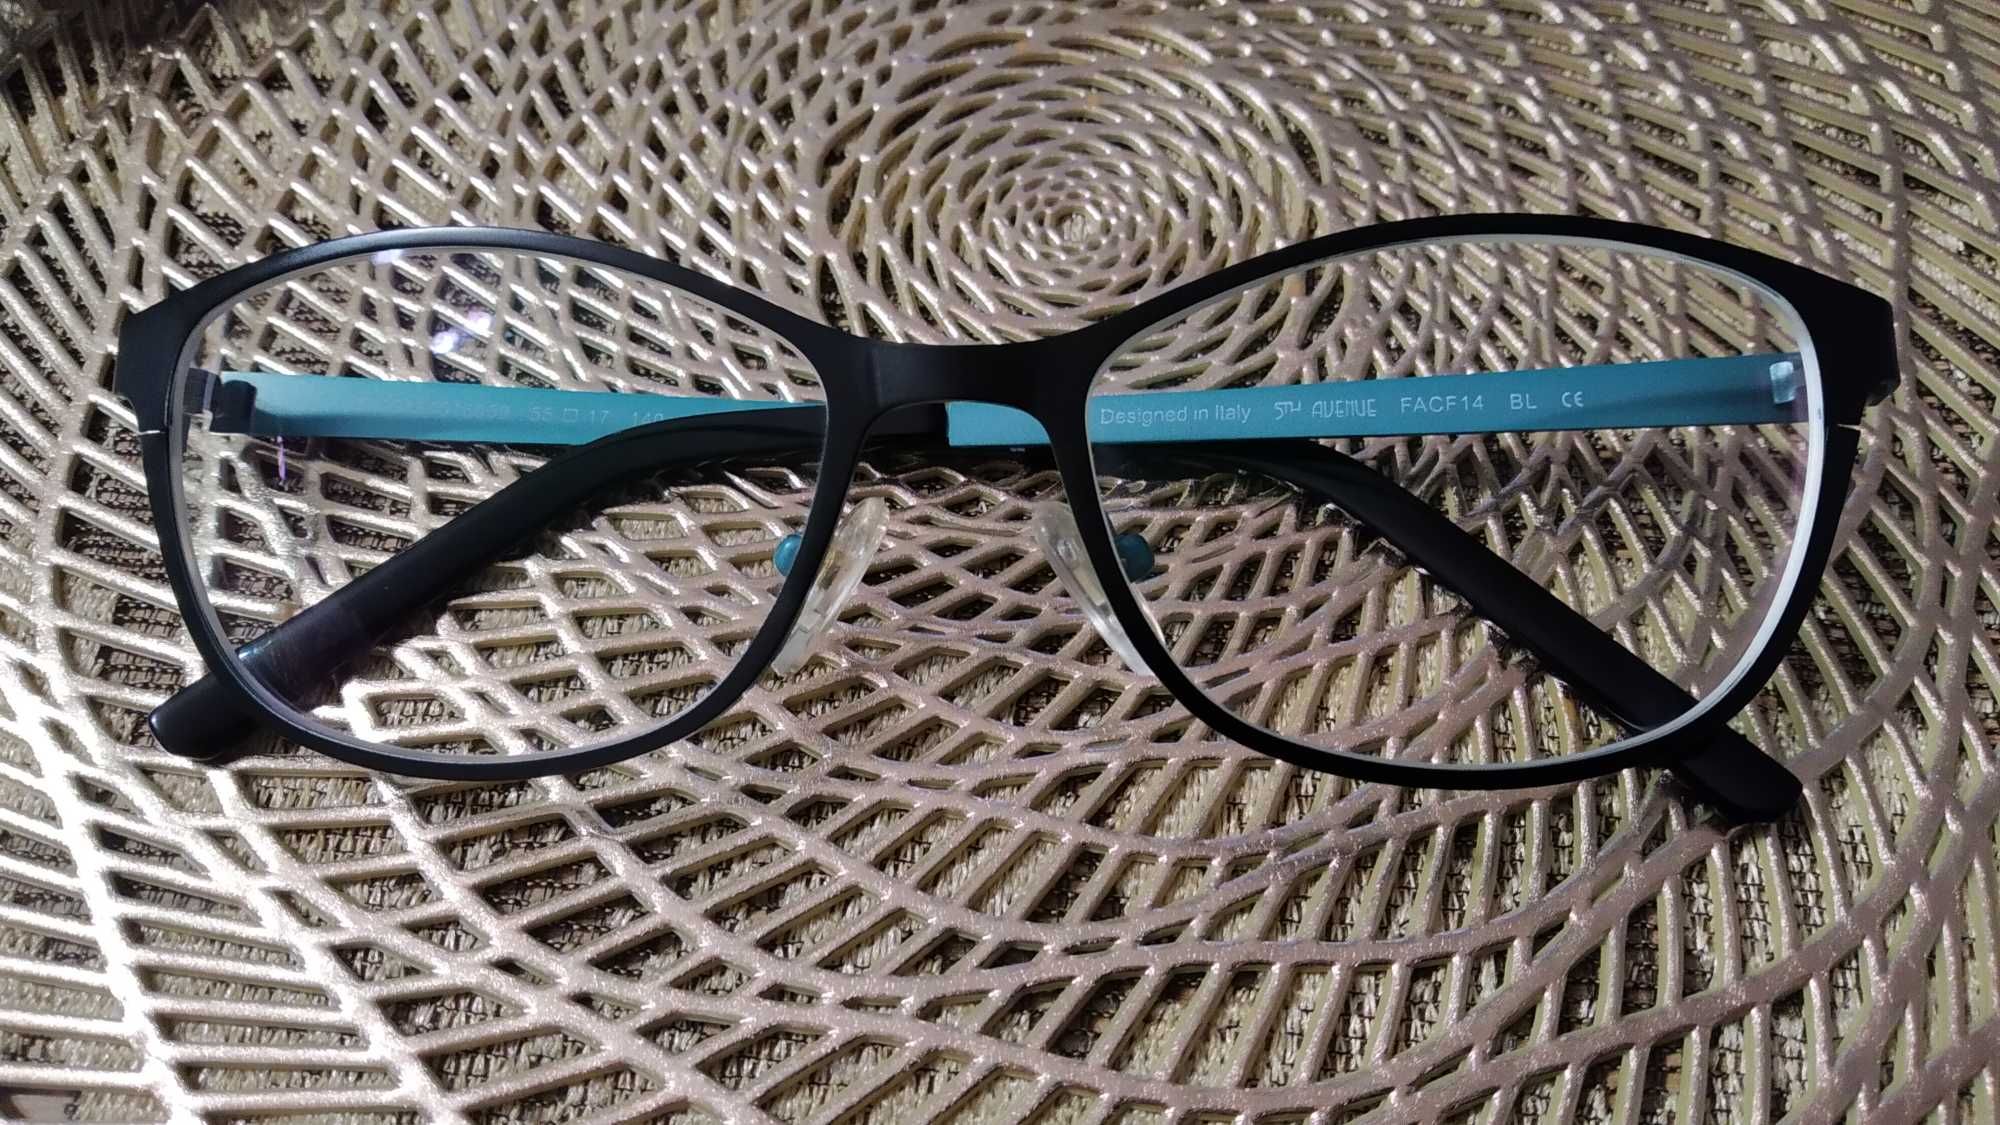 Nowe okulary korekcyjne -2.75 5th Advenue 700zł